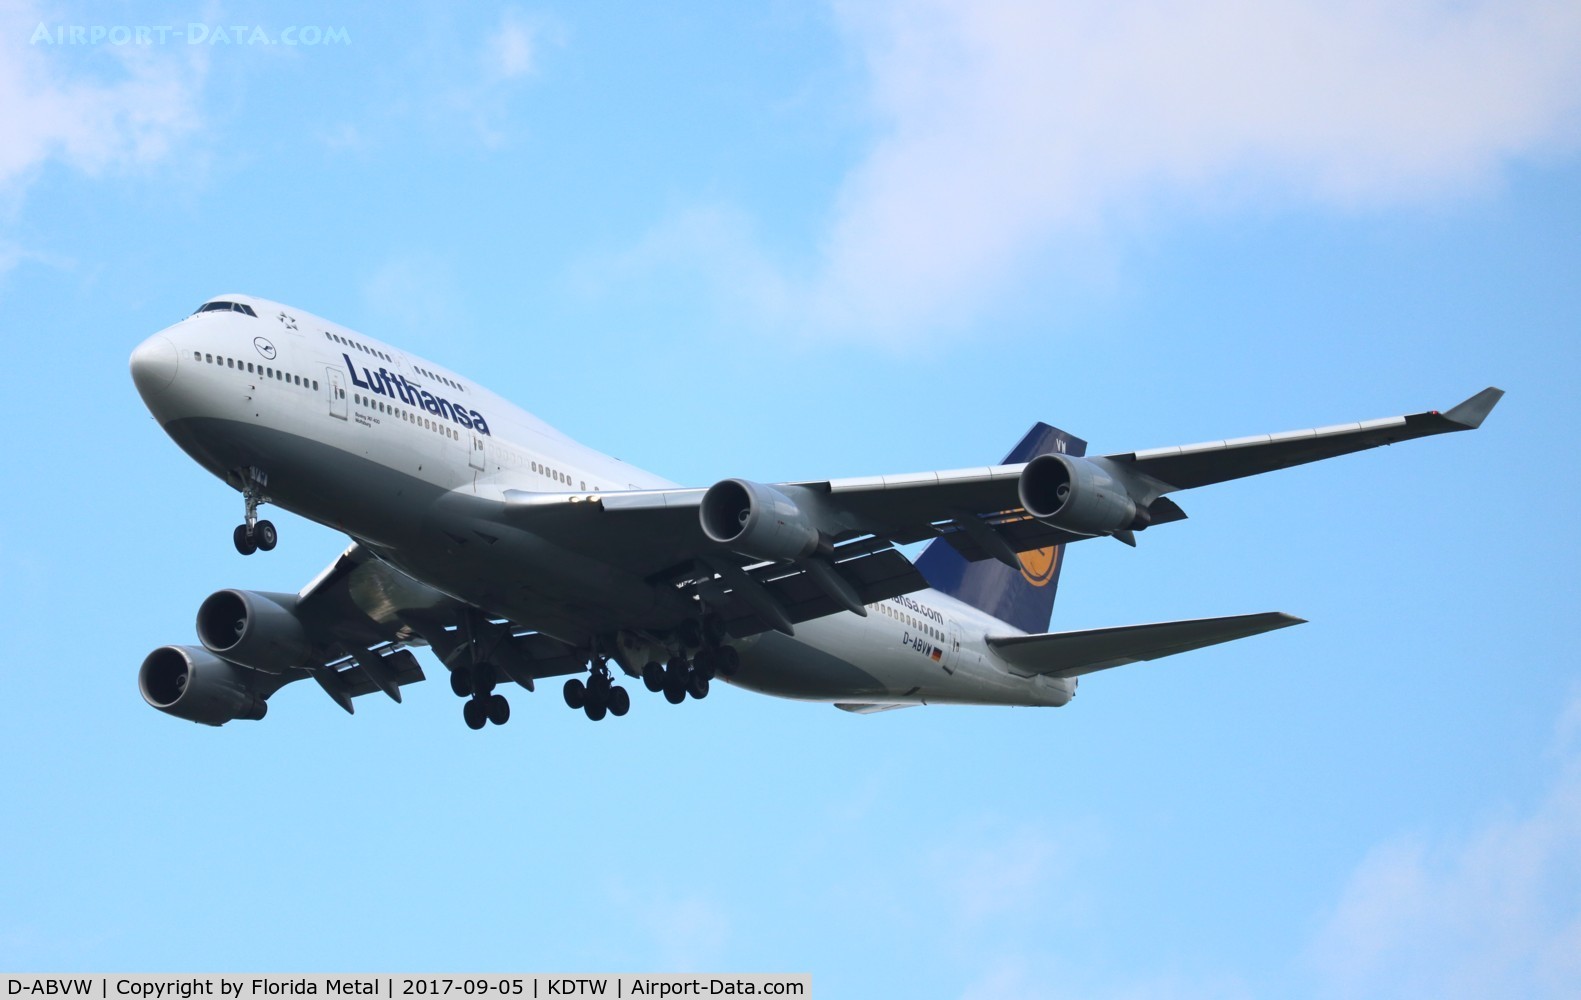 D-ABVW, 1999 Boeing 747-430 C/N 29493, Lufthansa 747-400 zx